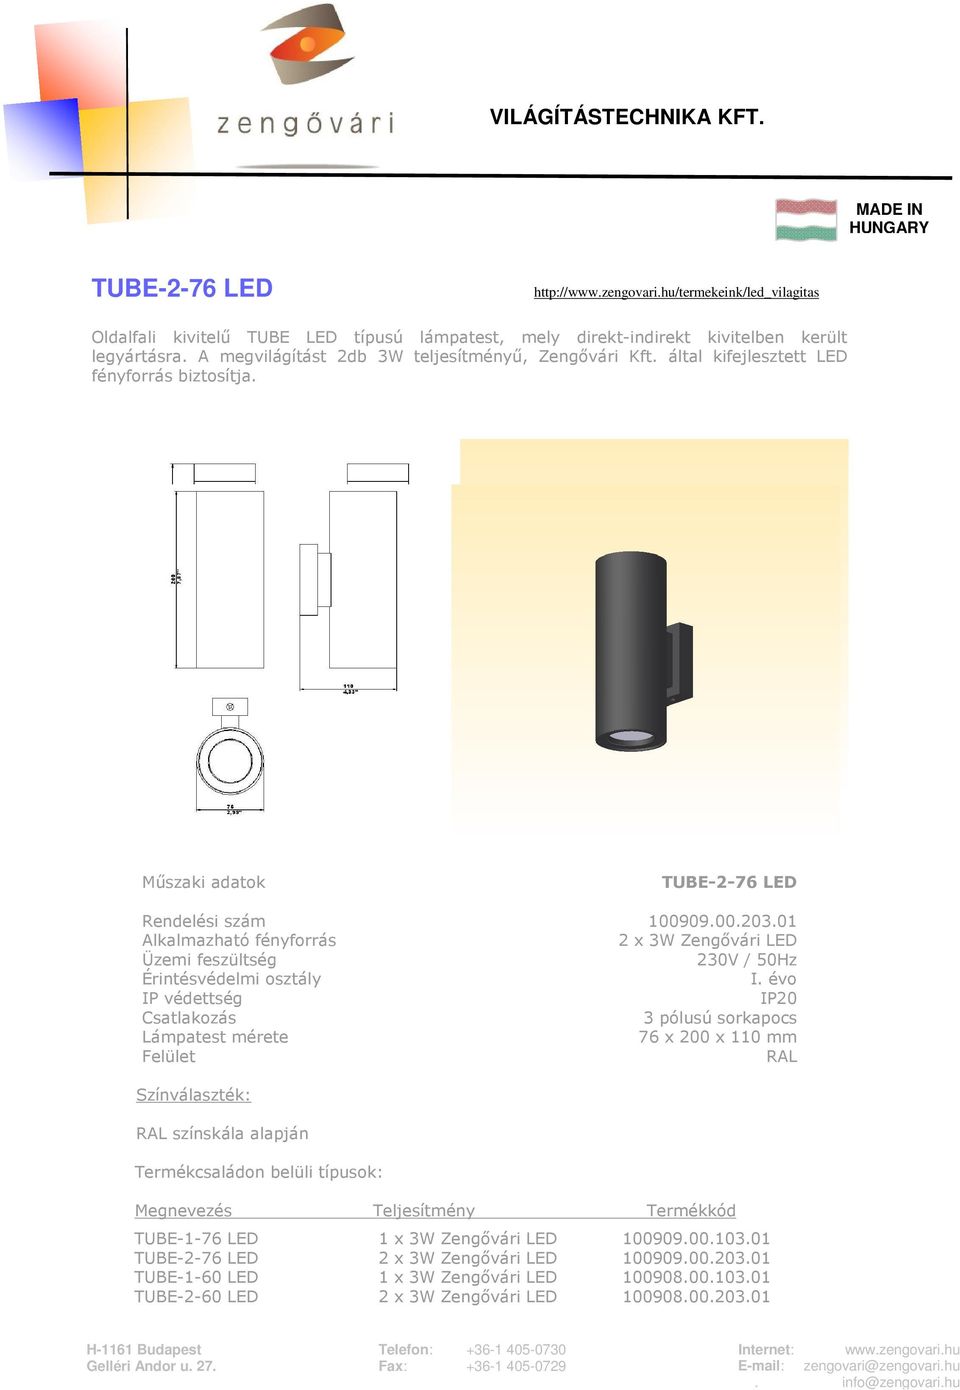 által kifejlesztett LED fényforrás biztosítja. TUBE-2-76 LED Rendelési szám 100909.00.203.